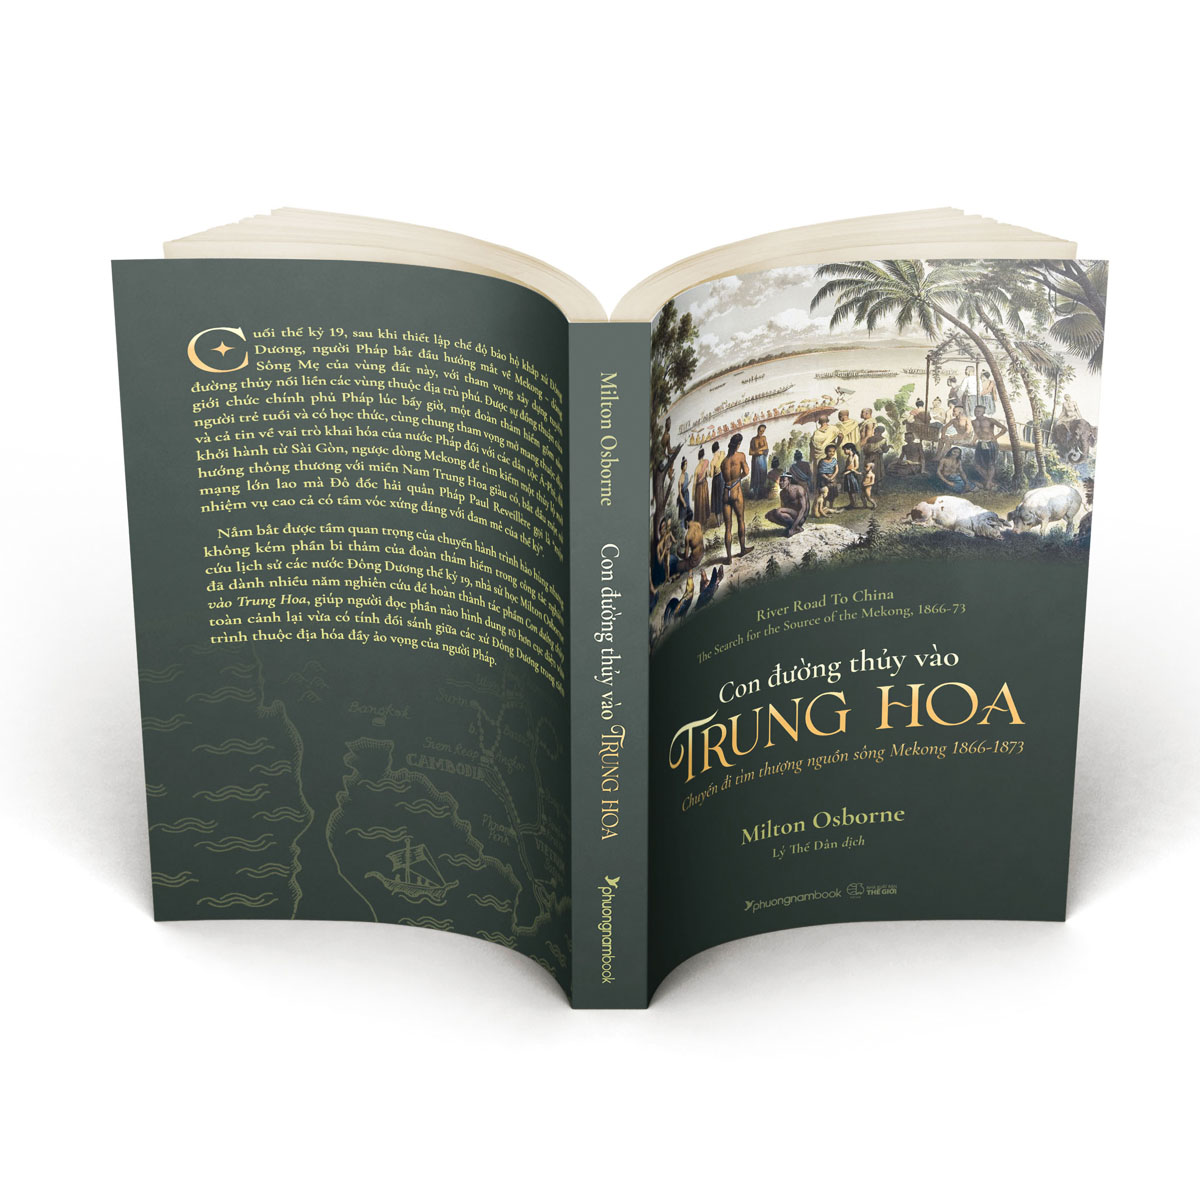 CON ĐƯỜNG THỦY VÀO TRUNG HOA (Chuyến đi tìm thượng nguồn sông Mekong 1866-1873) - Milton Osborne - Lý Thế Dân - (bìa mềm)